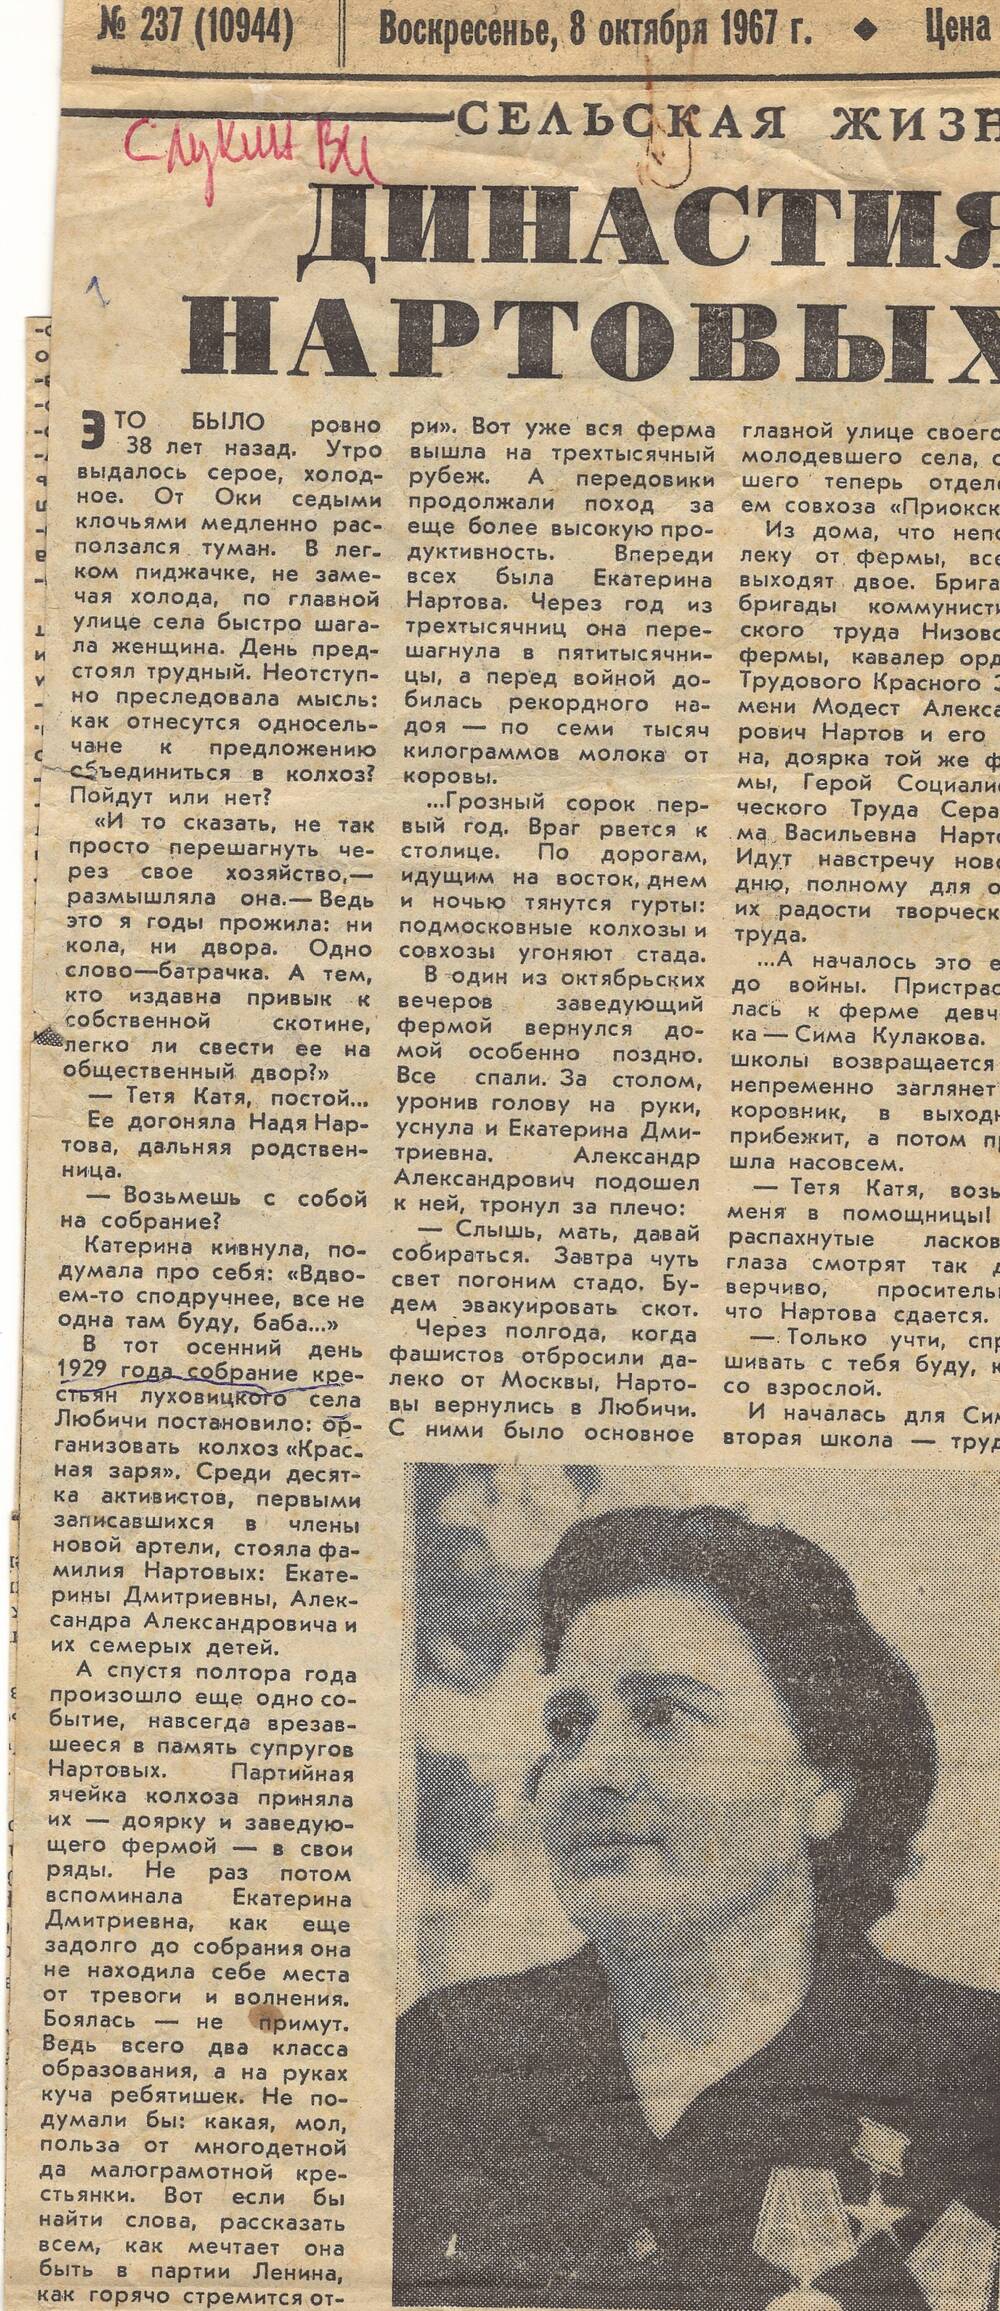 Статья из газеты Династия Нартовых 1967 год